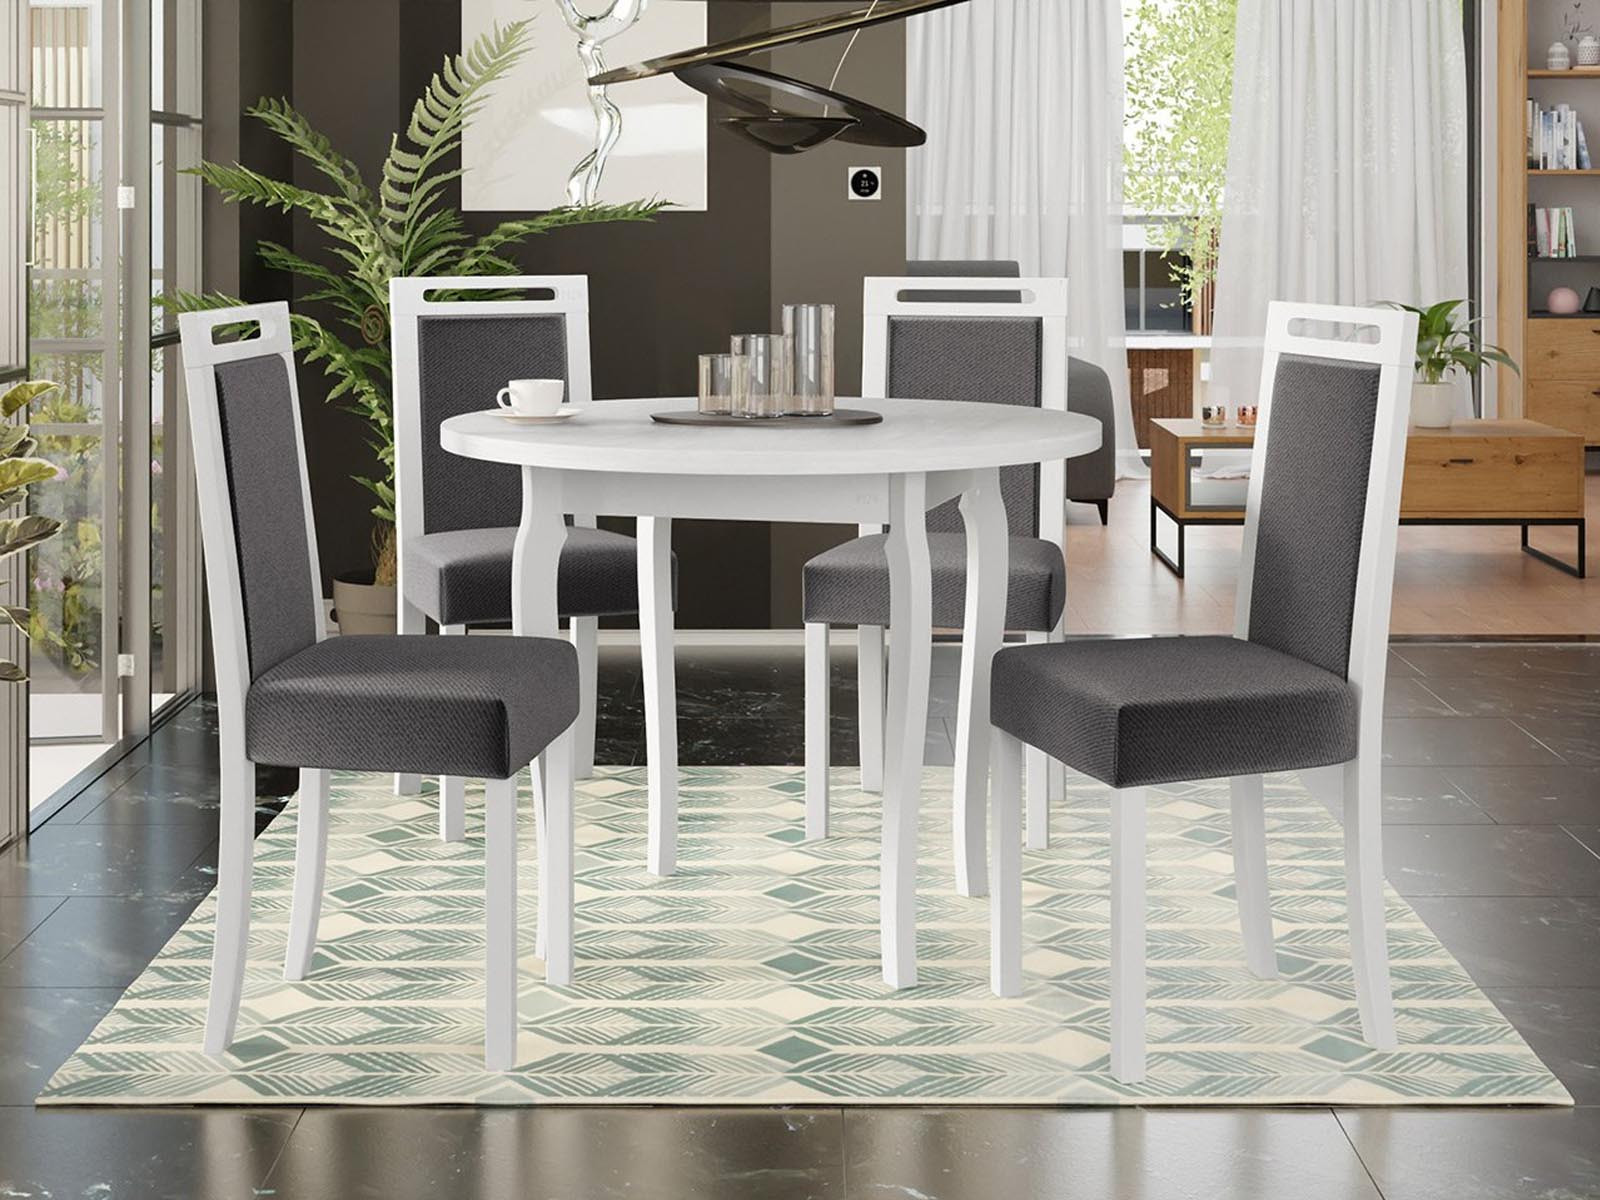 Ronde eettafel ALOIS Ø 100 cm wit met 4 stoelen en donkergrijze kussens